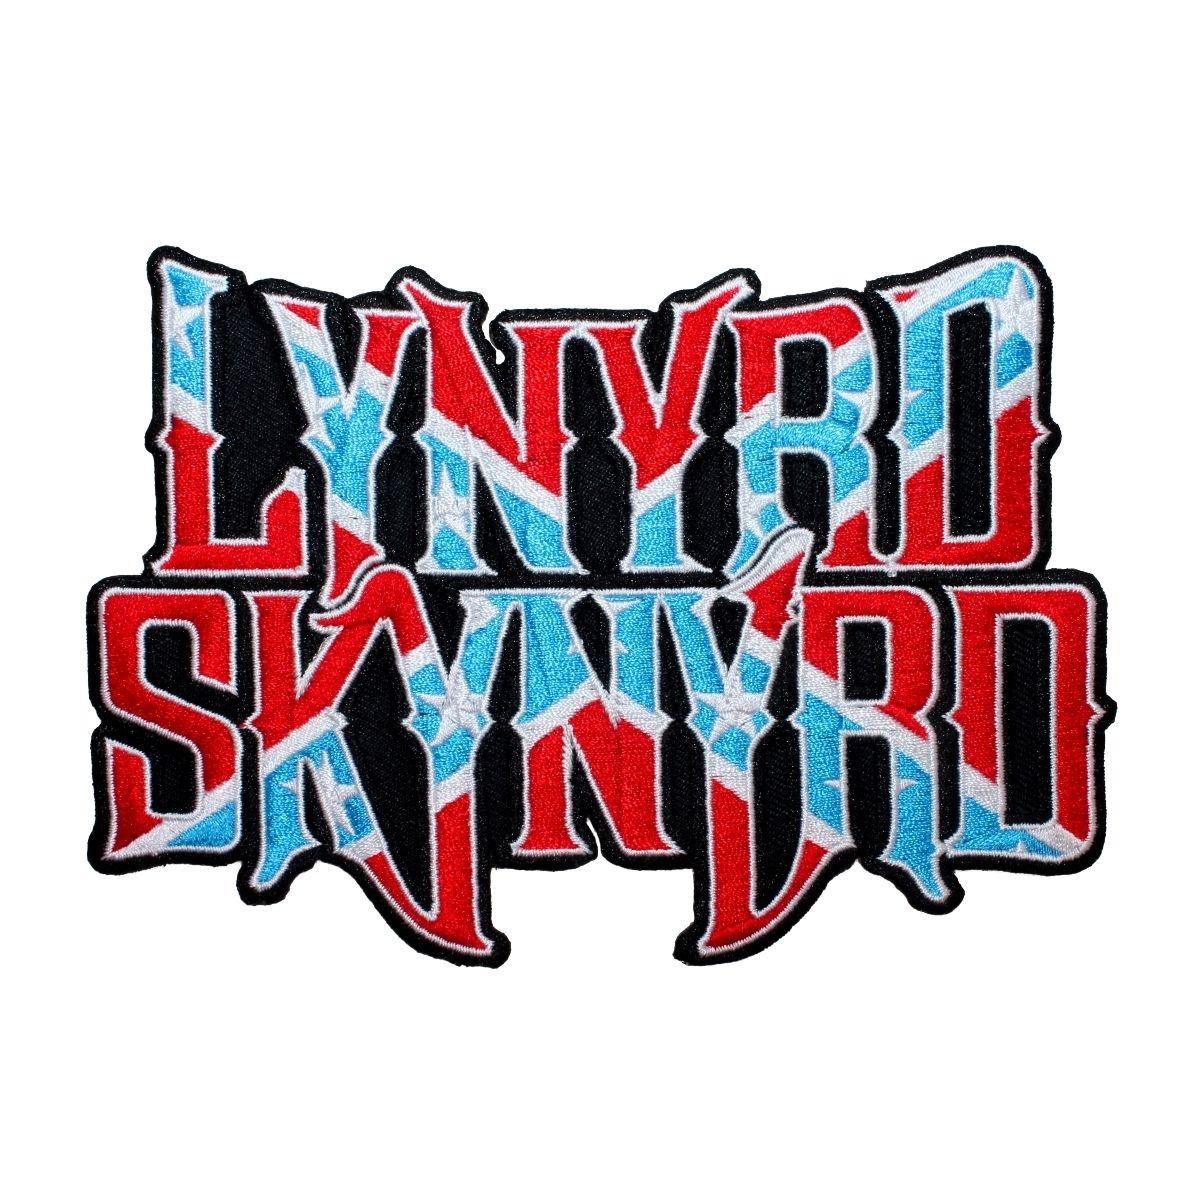 Lynyrd Skynyrd Logo - Lynyrd Skynyrd Larger Band Logo Patch Southern Rock Band Music ...